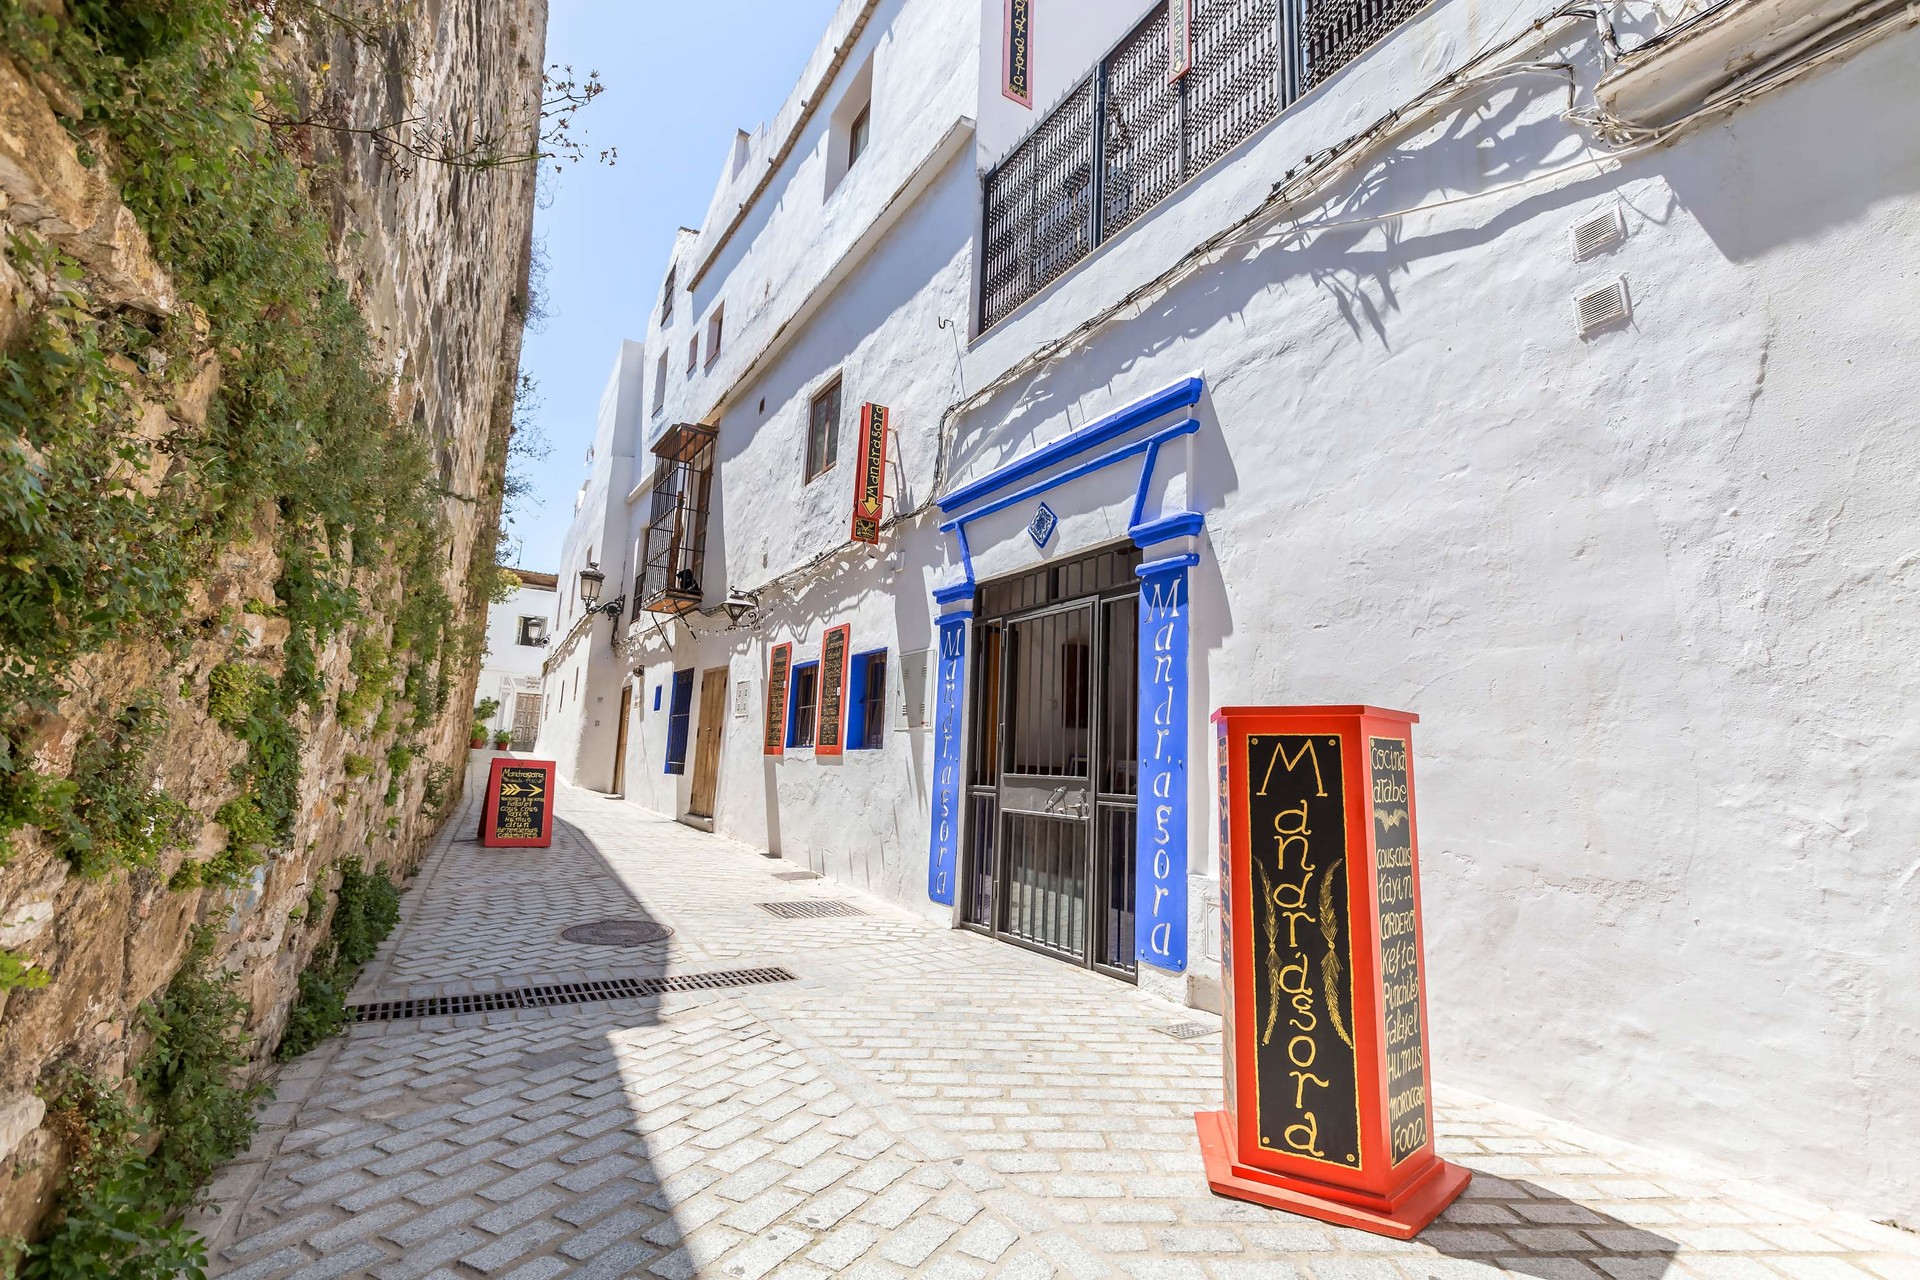 Portal Inmobiliario de Lujo en Tarifa, presenta chalet de lujo venta en Campo de Gibraltar, inmueble familiar para comprar y residencias lujosas en venta en Cádiz.